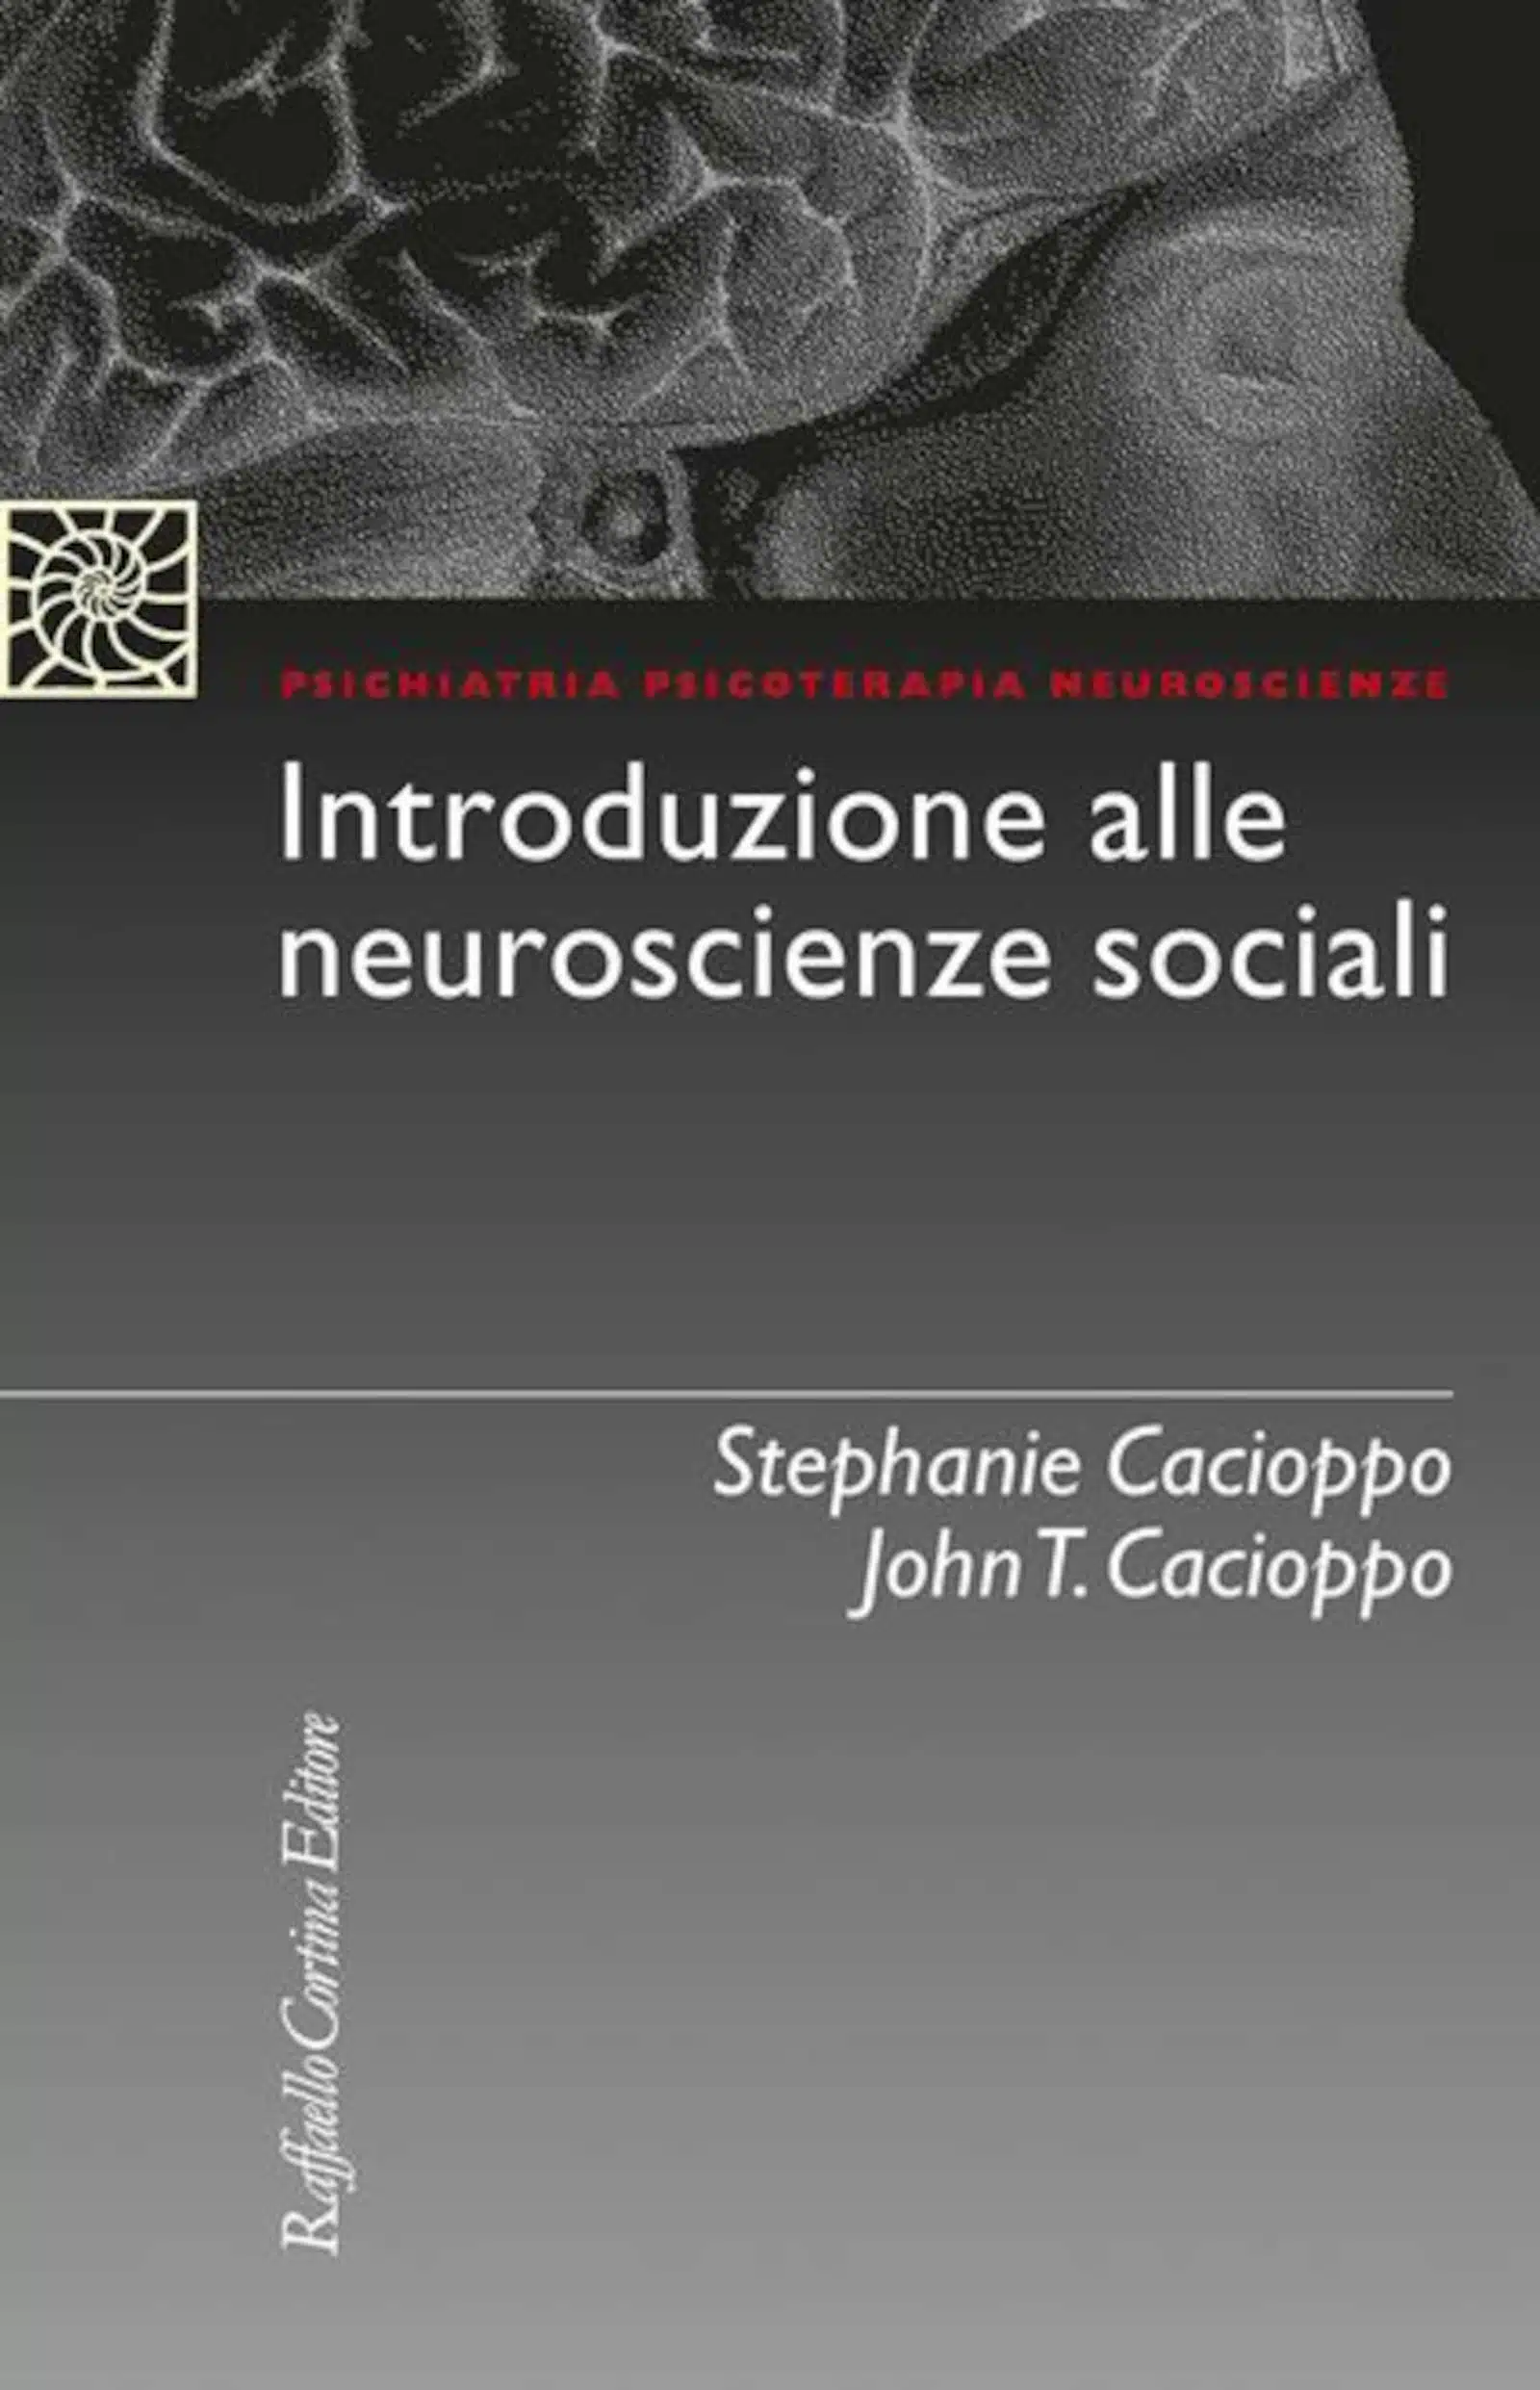 Introduzione alle neuroscienze sociali 2022 Recensione del libro Featured